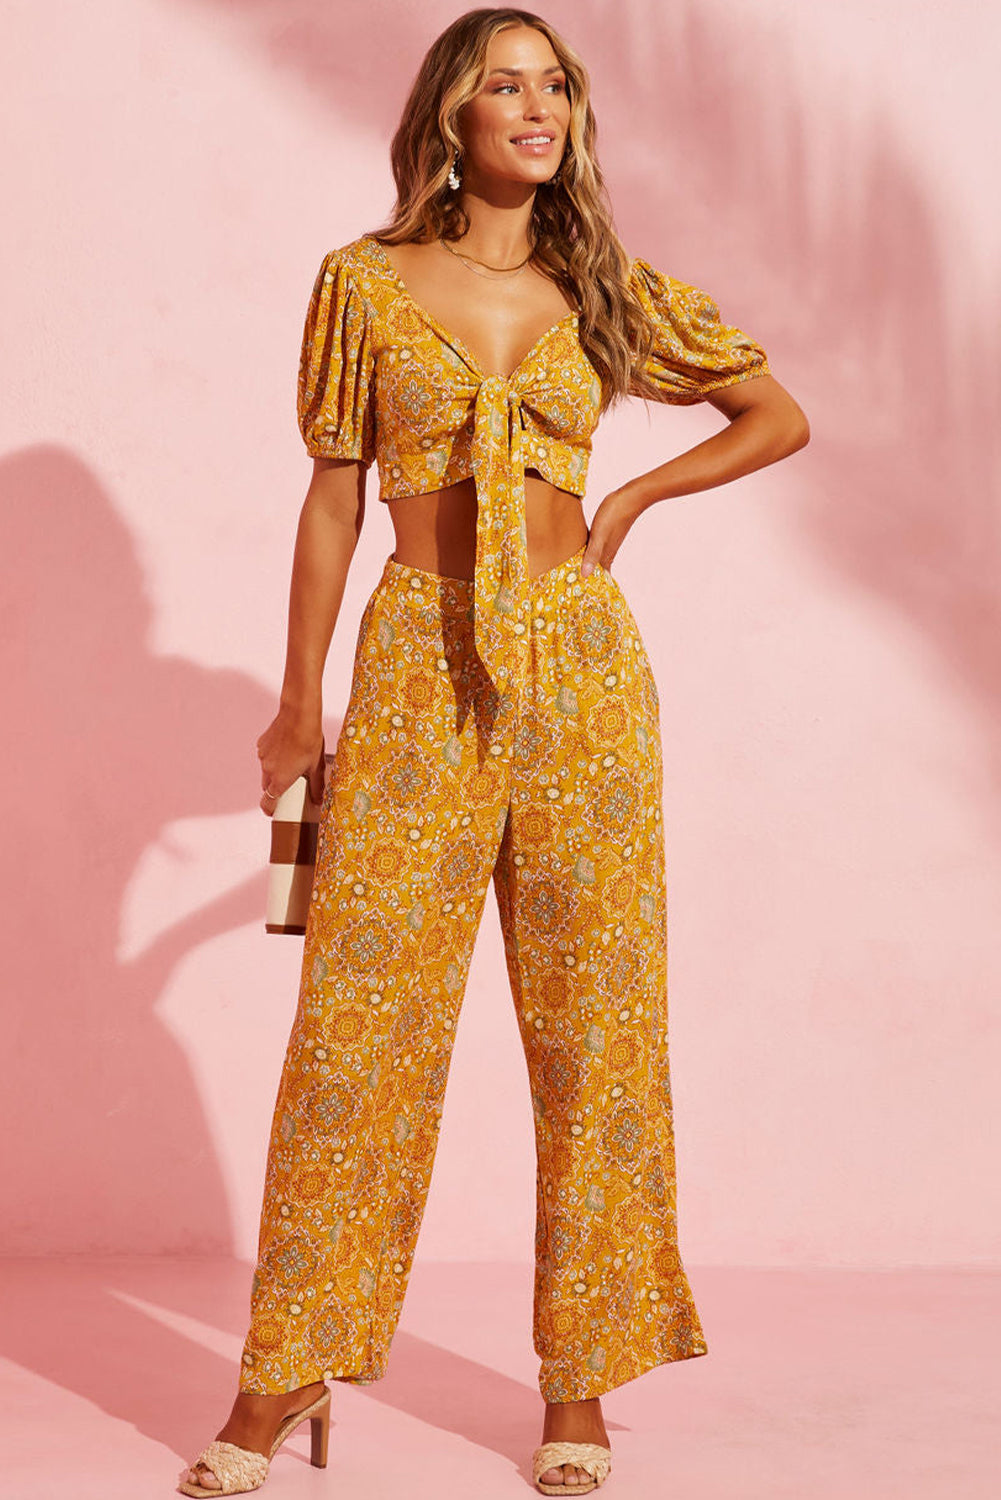 Pantalon large à poches et imprimé floral bohème jaune